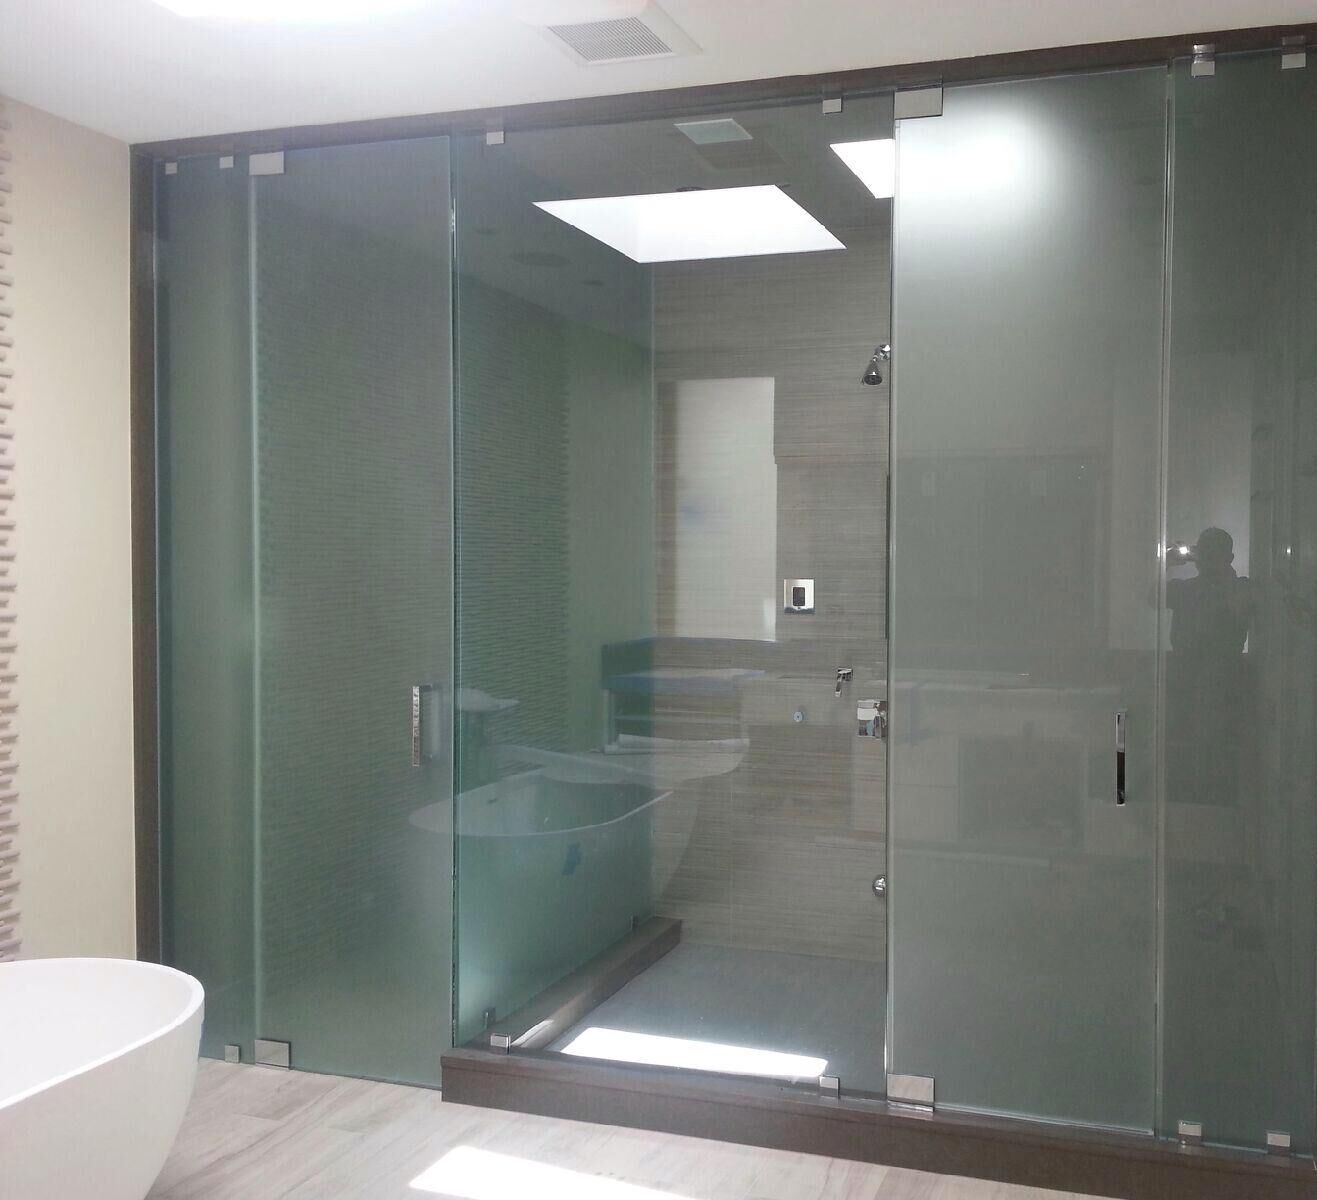 Frameless Shower & Toilet Area combo 6.6.14-min